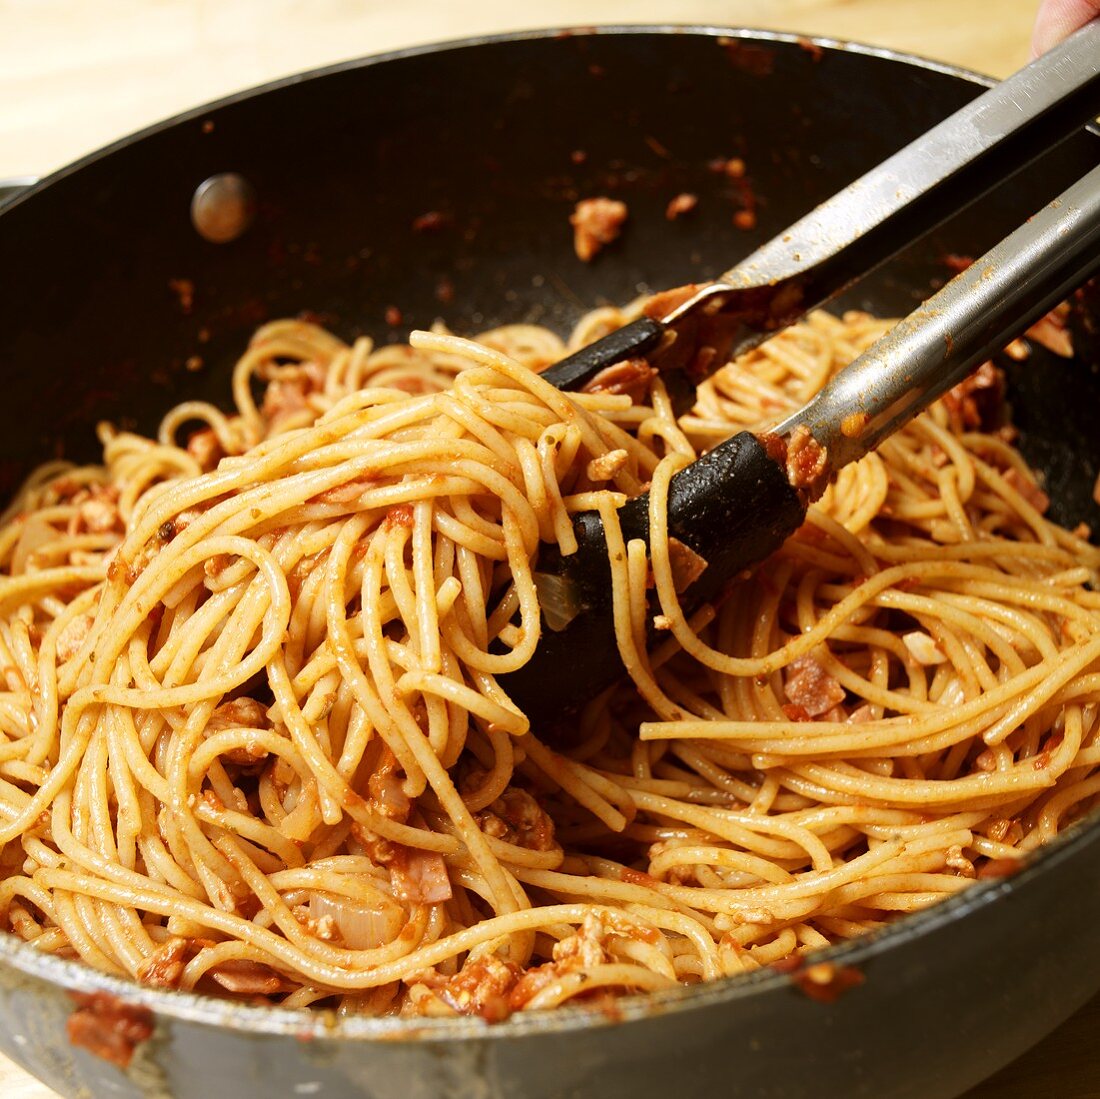 Spaghetti mit Fleischsauce